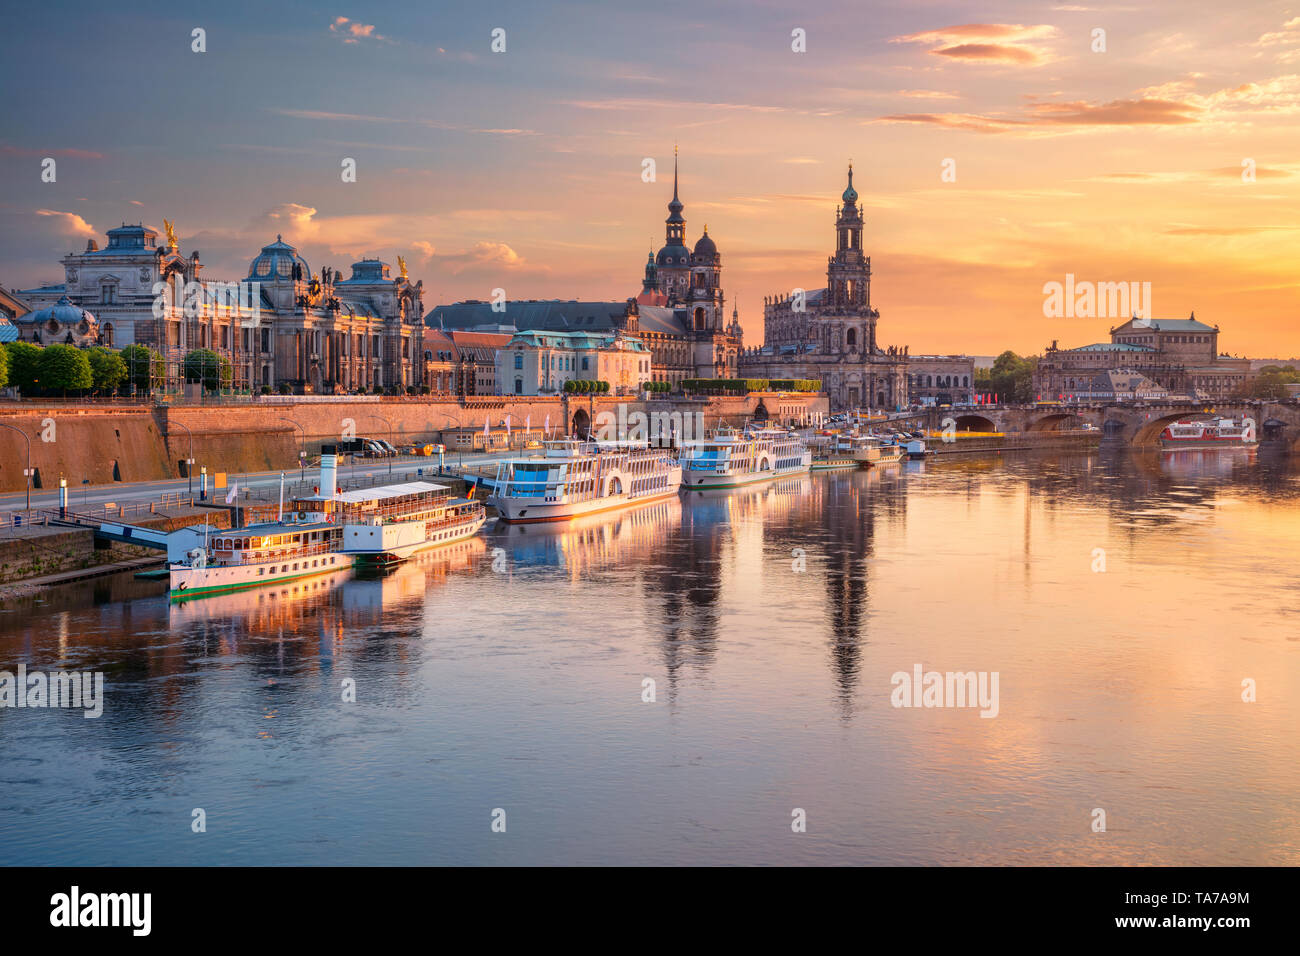 Dresde, Allemagne. Cityscape image de Dresde, Allemagne avec la réflexion de la ville sur le fleuve Elbe, au coucher du soleil. Banque D'Images